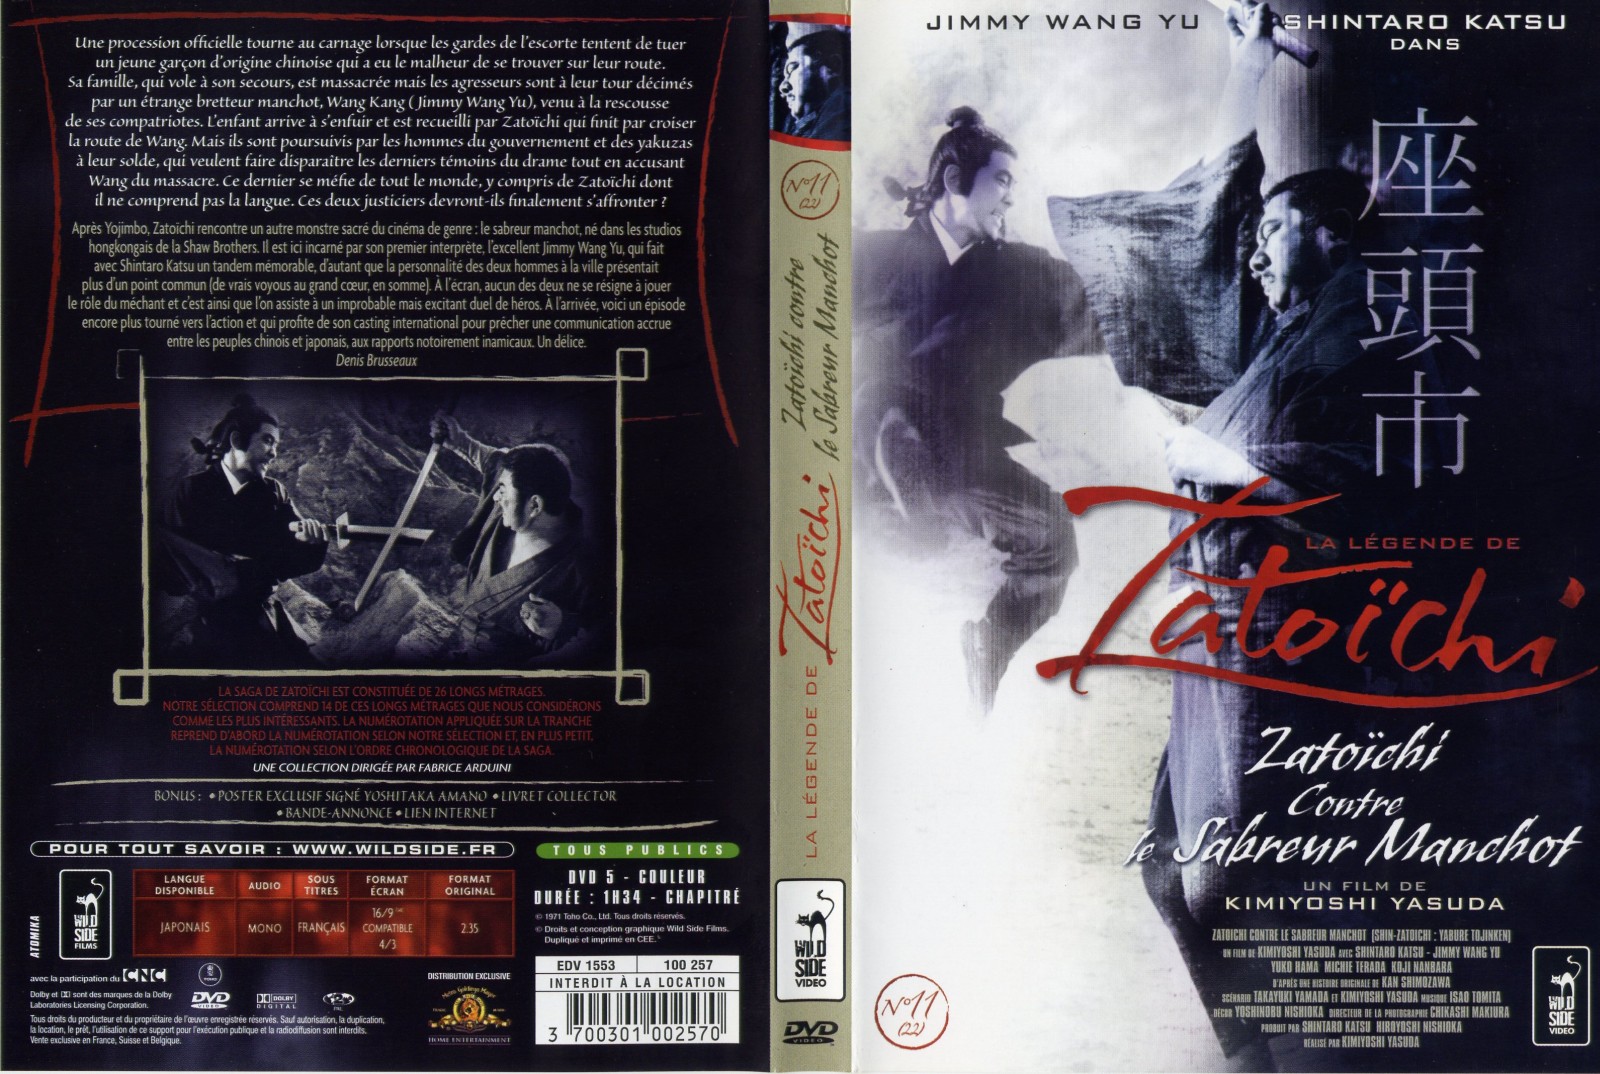 Jaquette DVD Zatoichi - Zatoichi contre le sabreur manchot